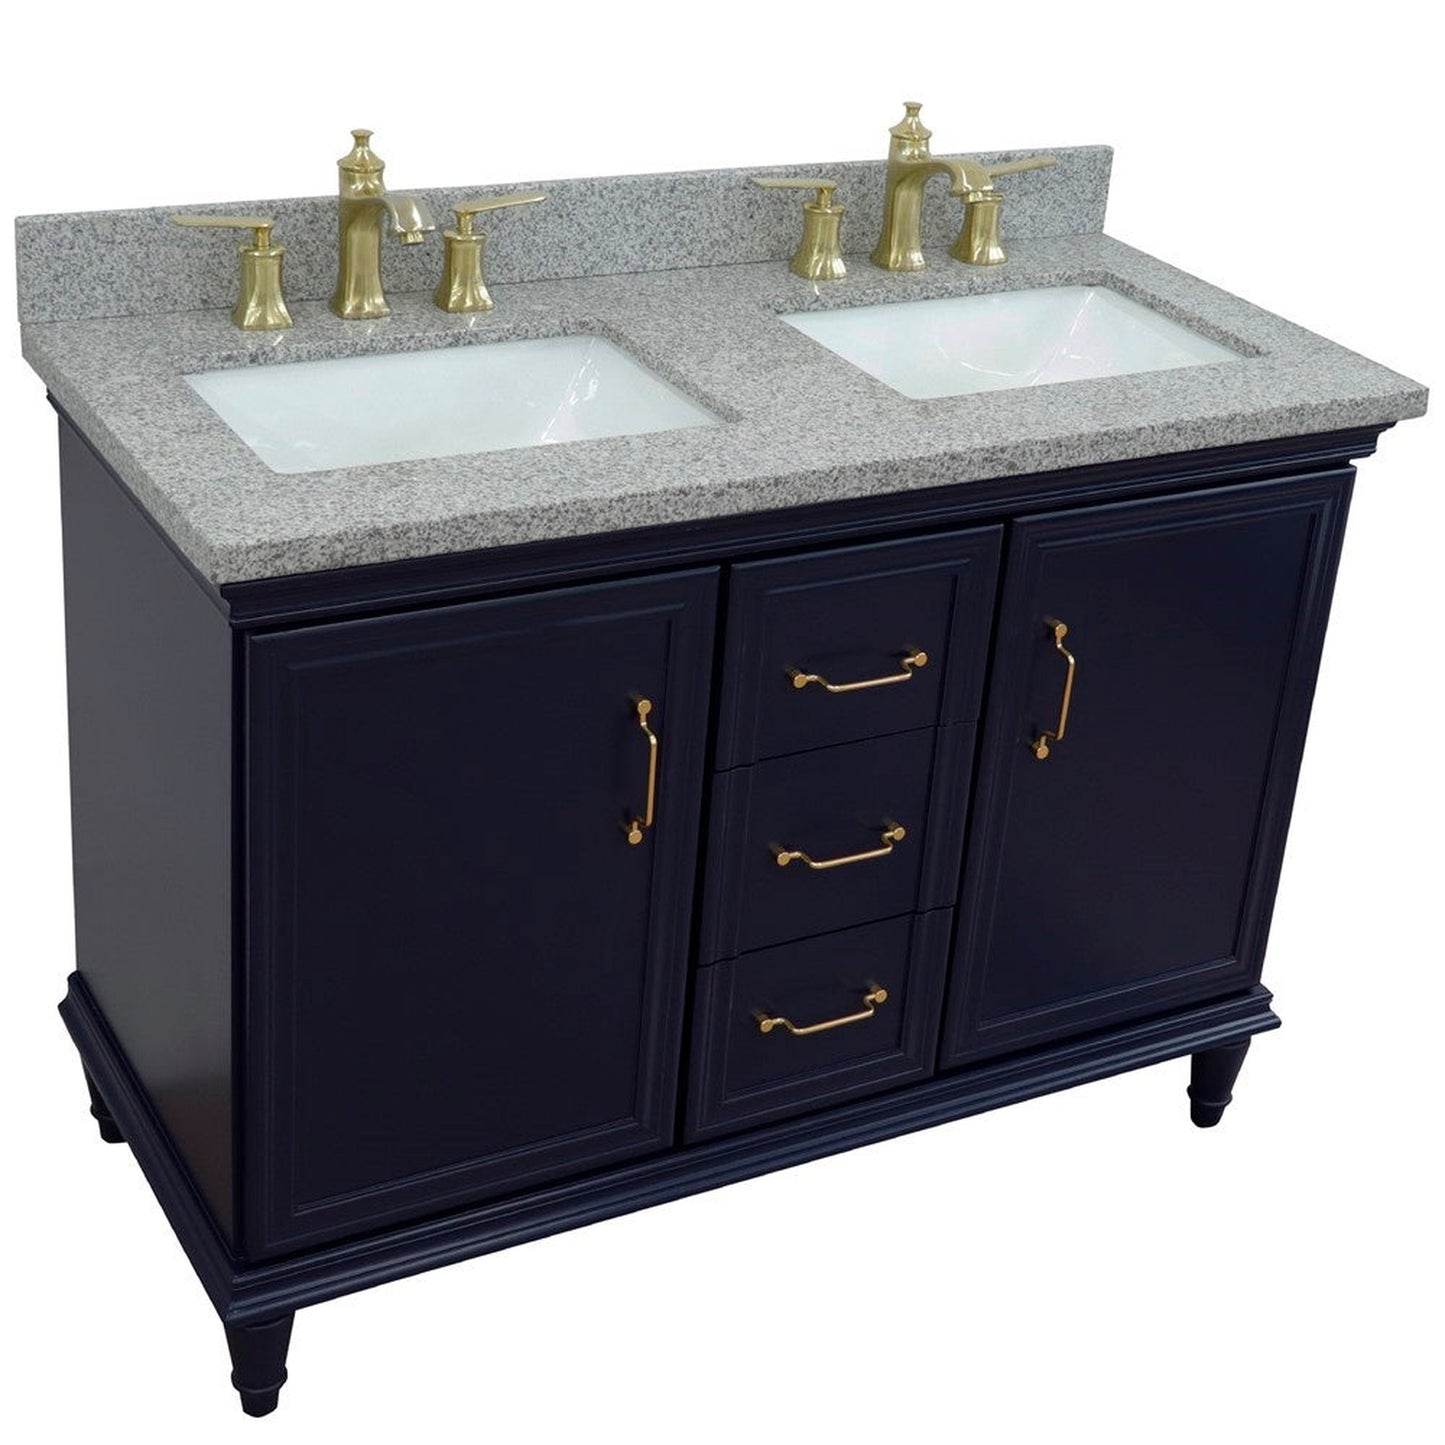 Bellaterra Home Forli 49" 2-Door 3-Drawer Blue Freestanding Vanity Set With Ceramic Double Undermount Rectangular Sink and Gray Granite Top